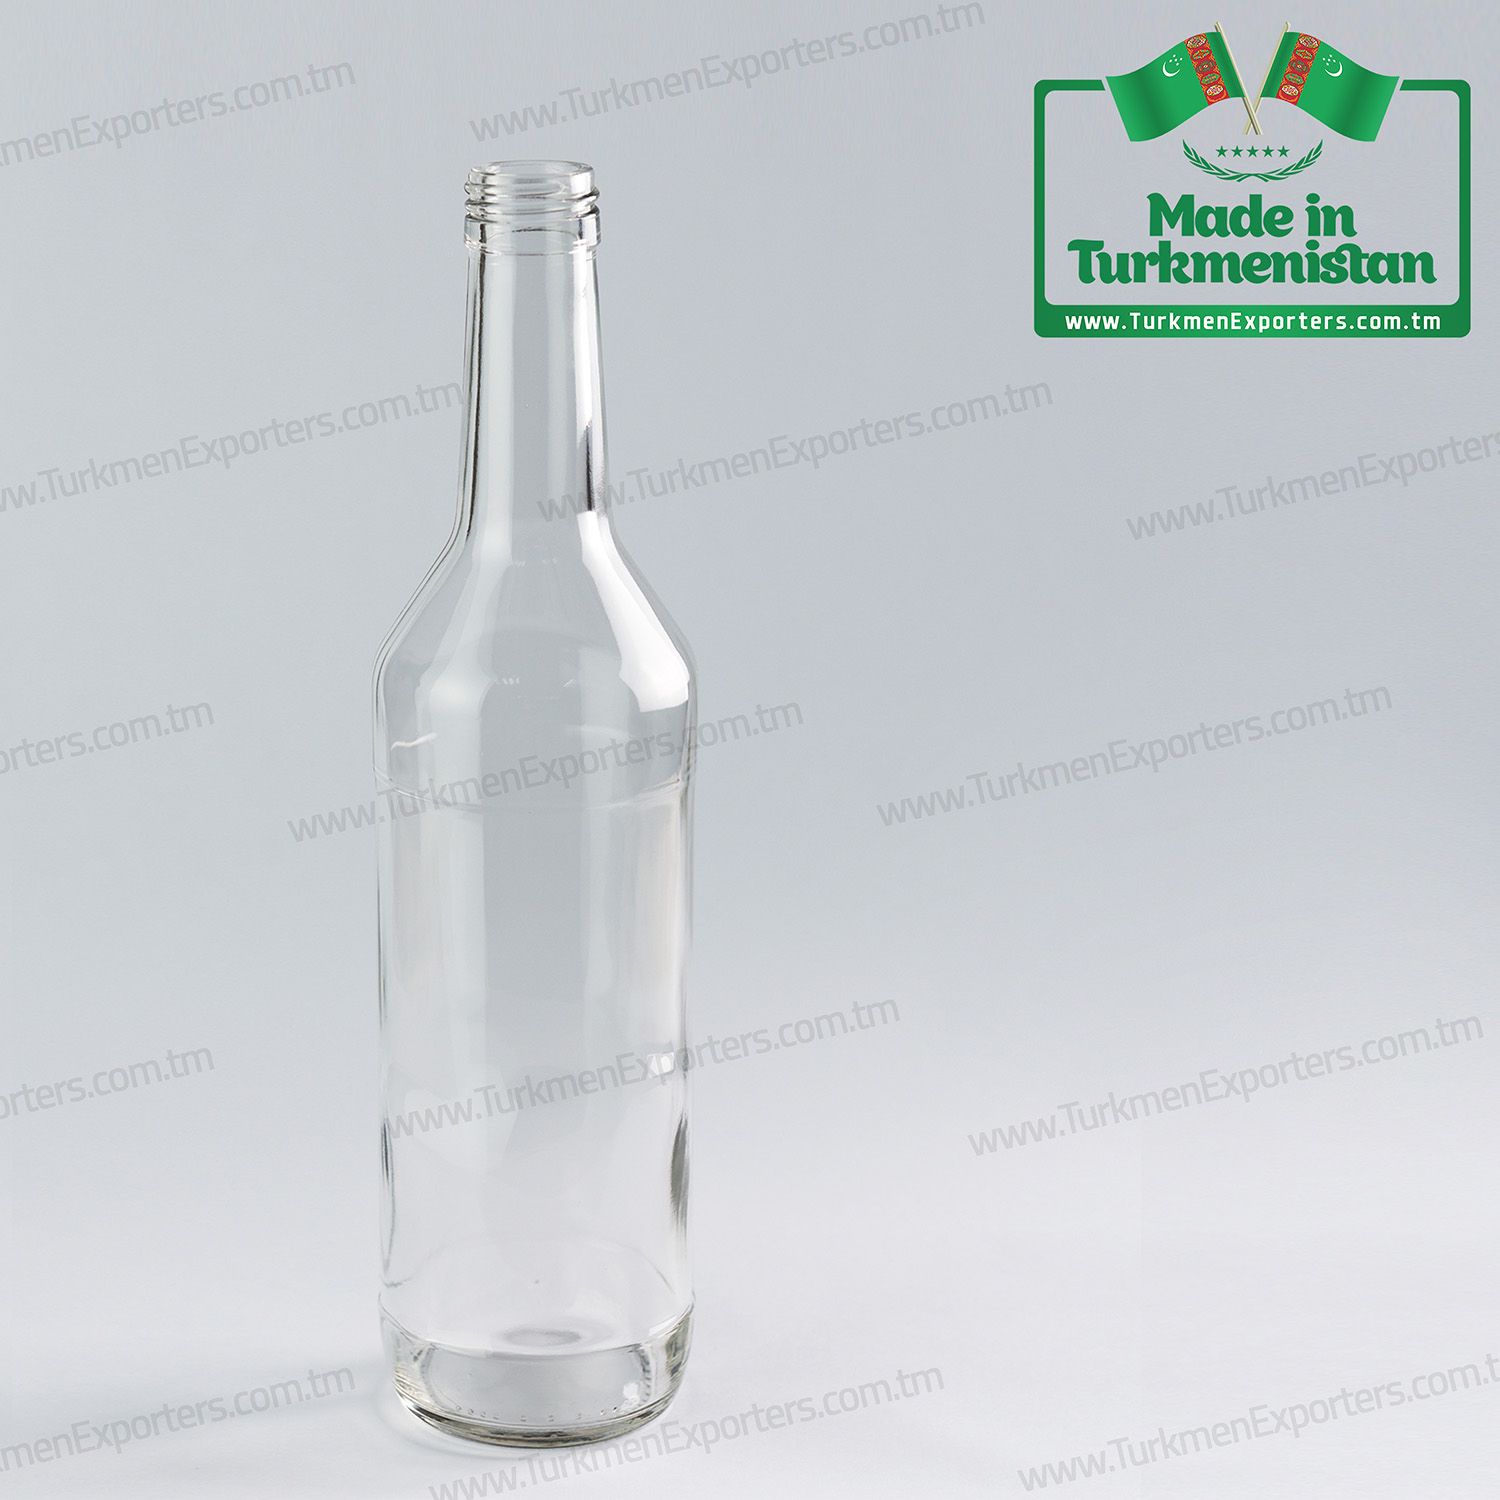 Glass bottles for alcoholic drinks Made in Turkmenistan | Turkmen Ayna Onumleri enterprise